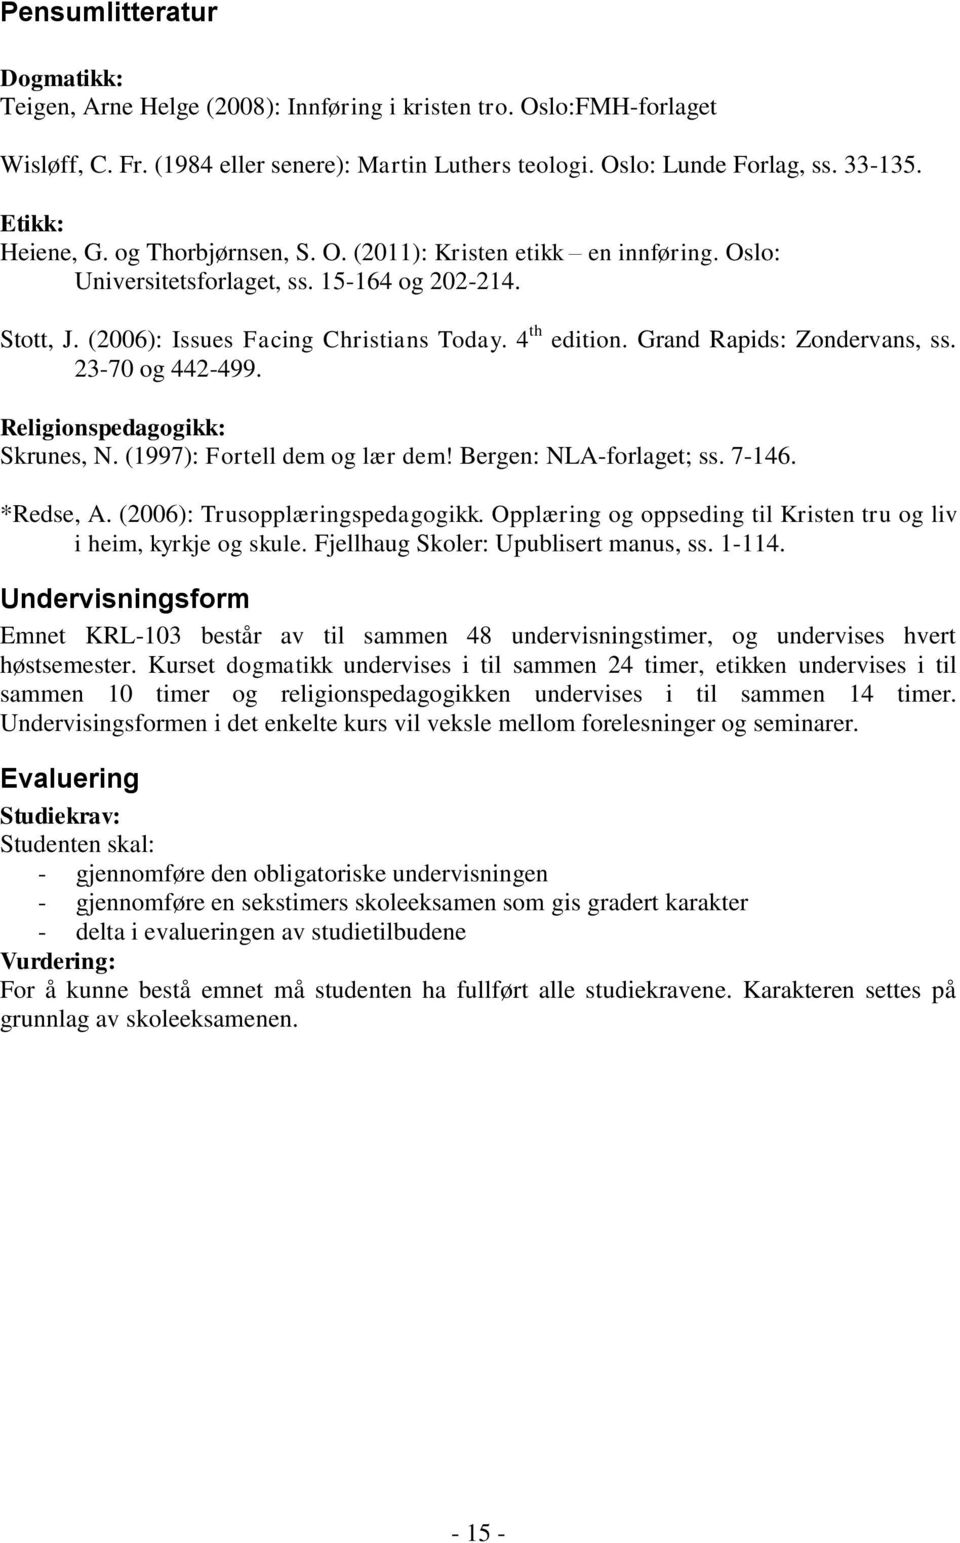 Grand Rapids: Zondervans, ss. 23-70 og 442-499. Religionspedagogikk: Skrunes, N. (1997): Fortell dem og lær dem! Bergen: NLA-forlaget; ss. 7-146. *Redse, A. (2006): Trusopplæringspedagogikk.